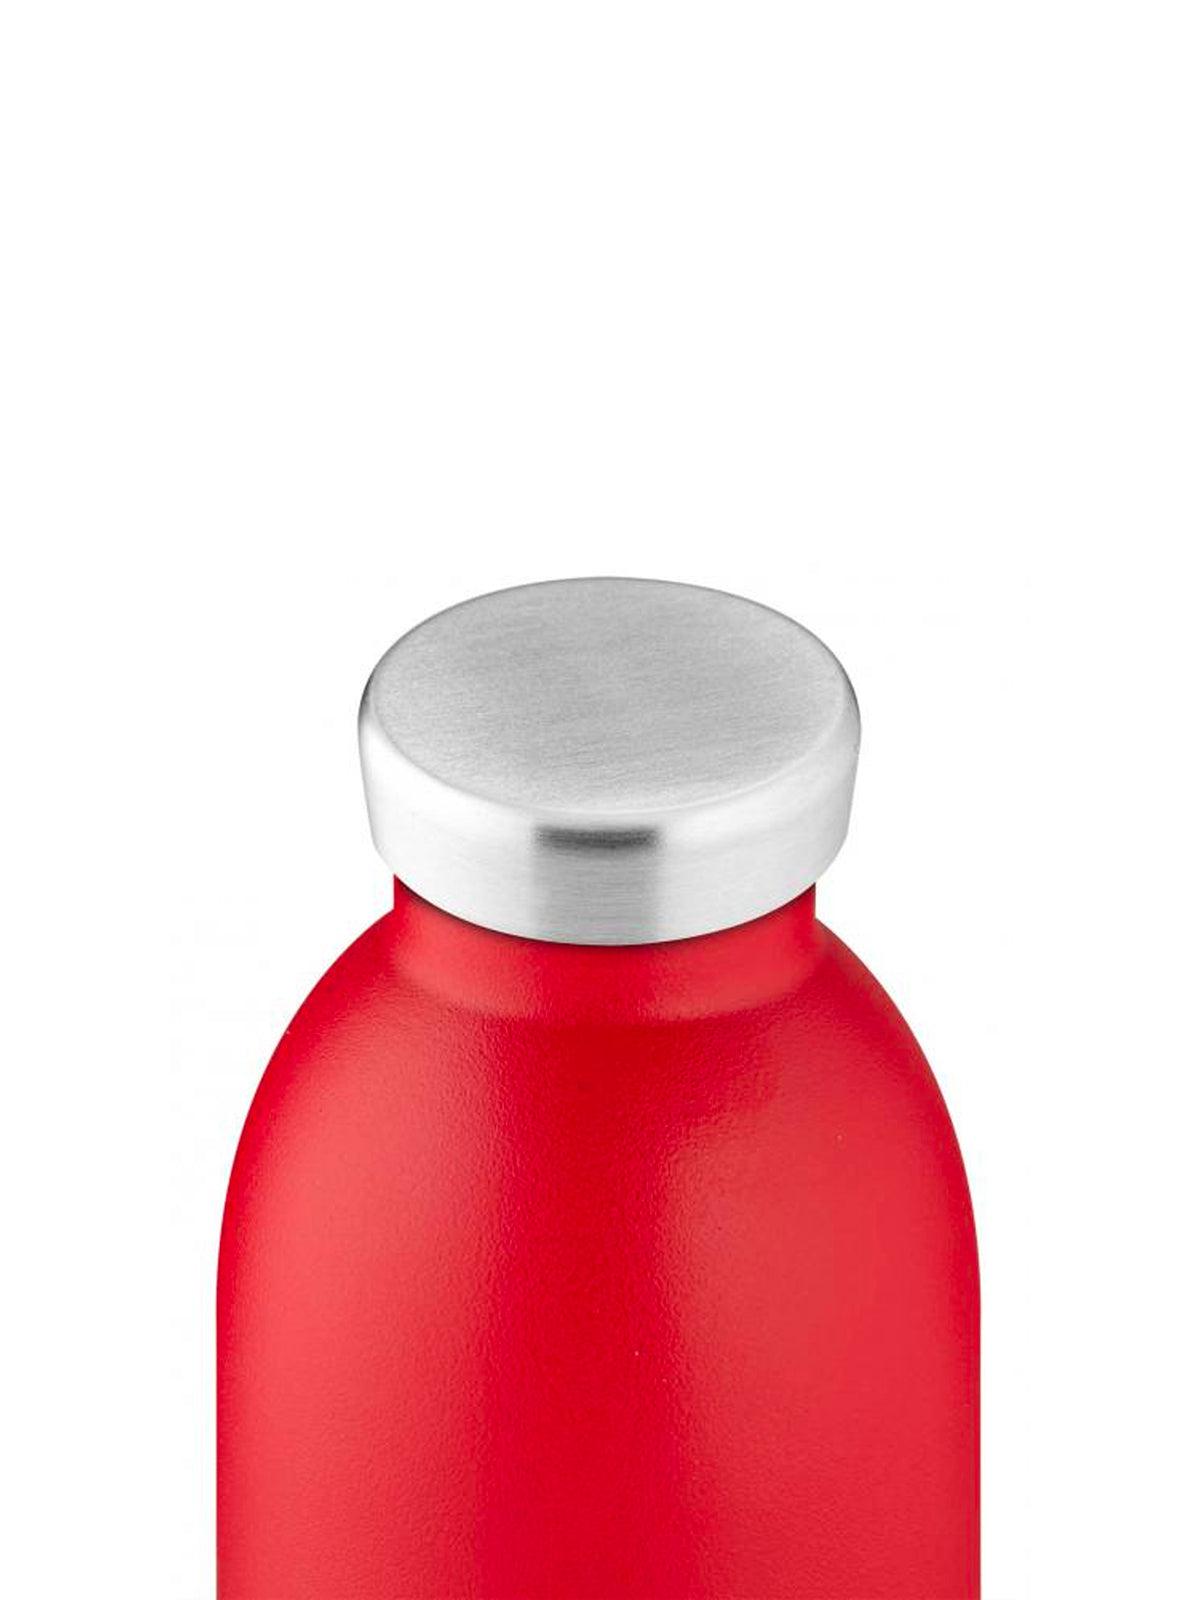 24Bottles Clima Bottle Hot Red 850ml